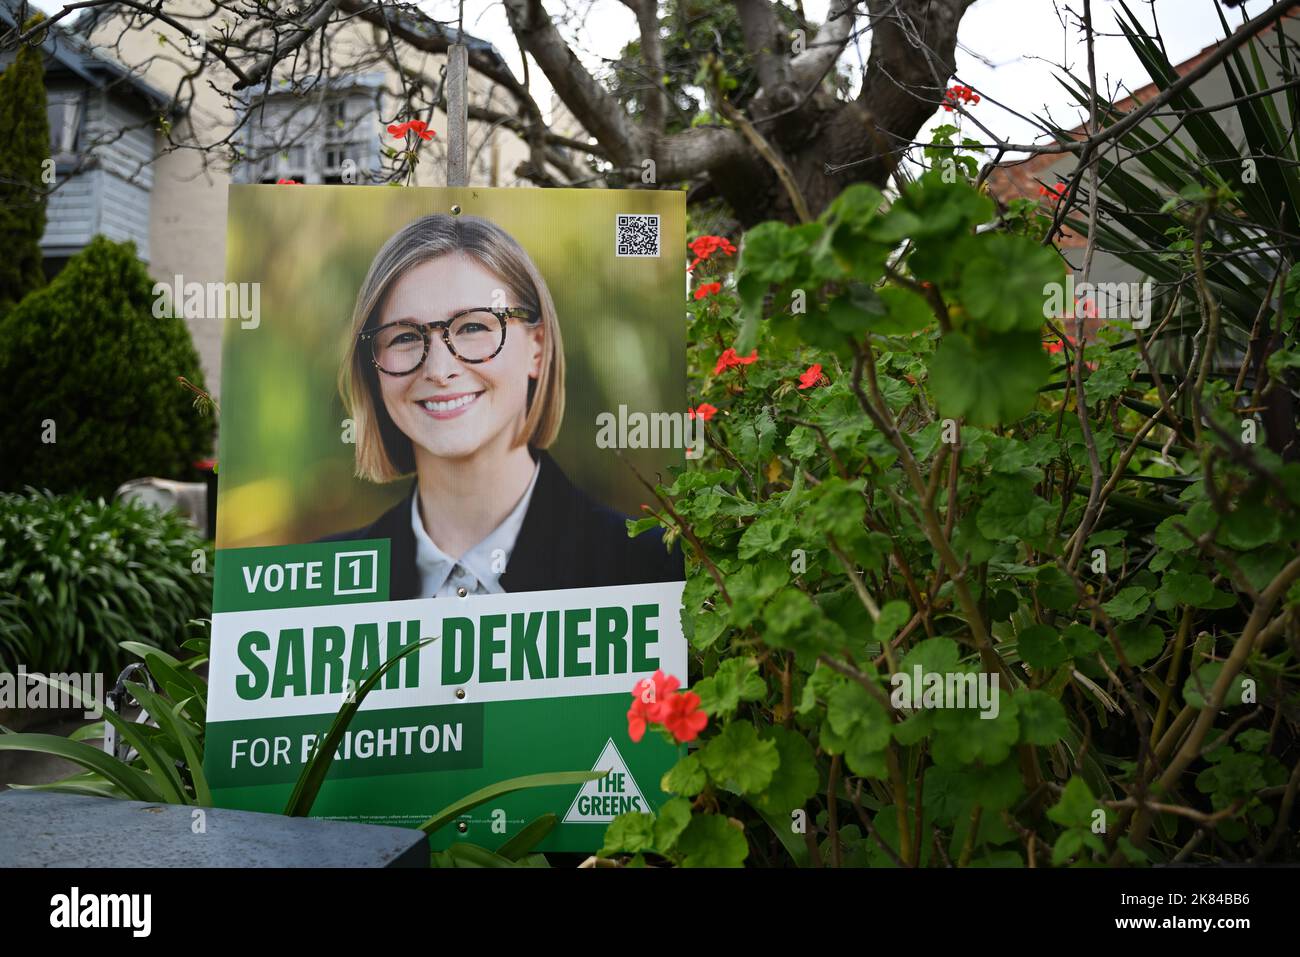 Campagne pour Sarah Dekiere, la candidate des Verts à Brighton à l'élection d'état à venir, nichée parmi les plantes en face d'une maison Banque D'Images